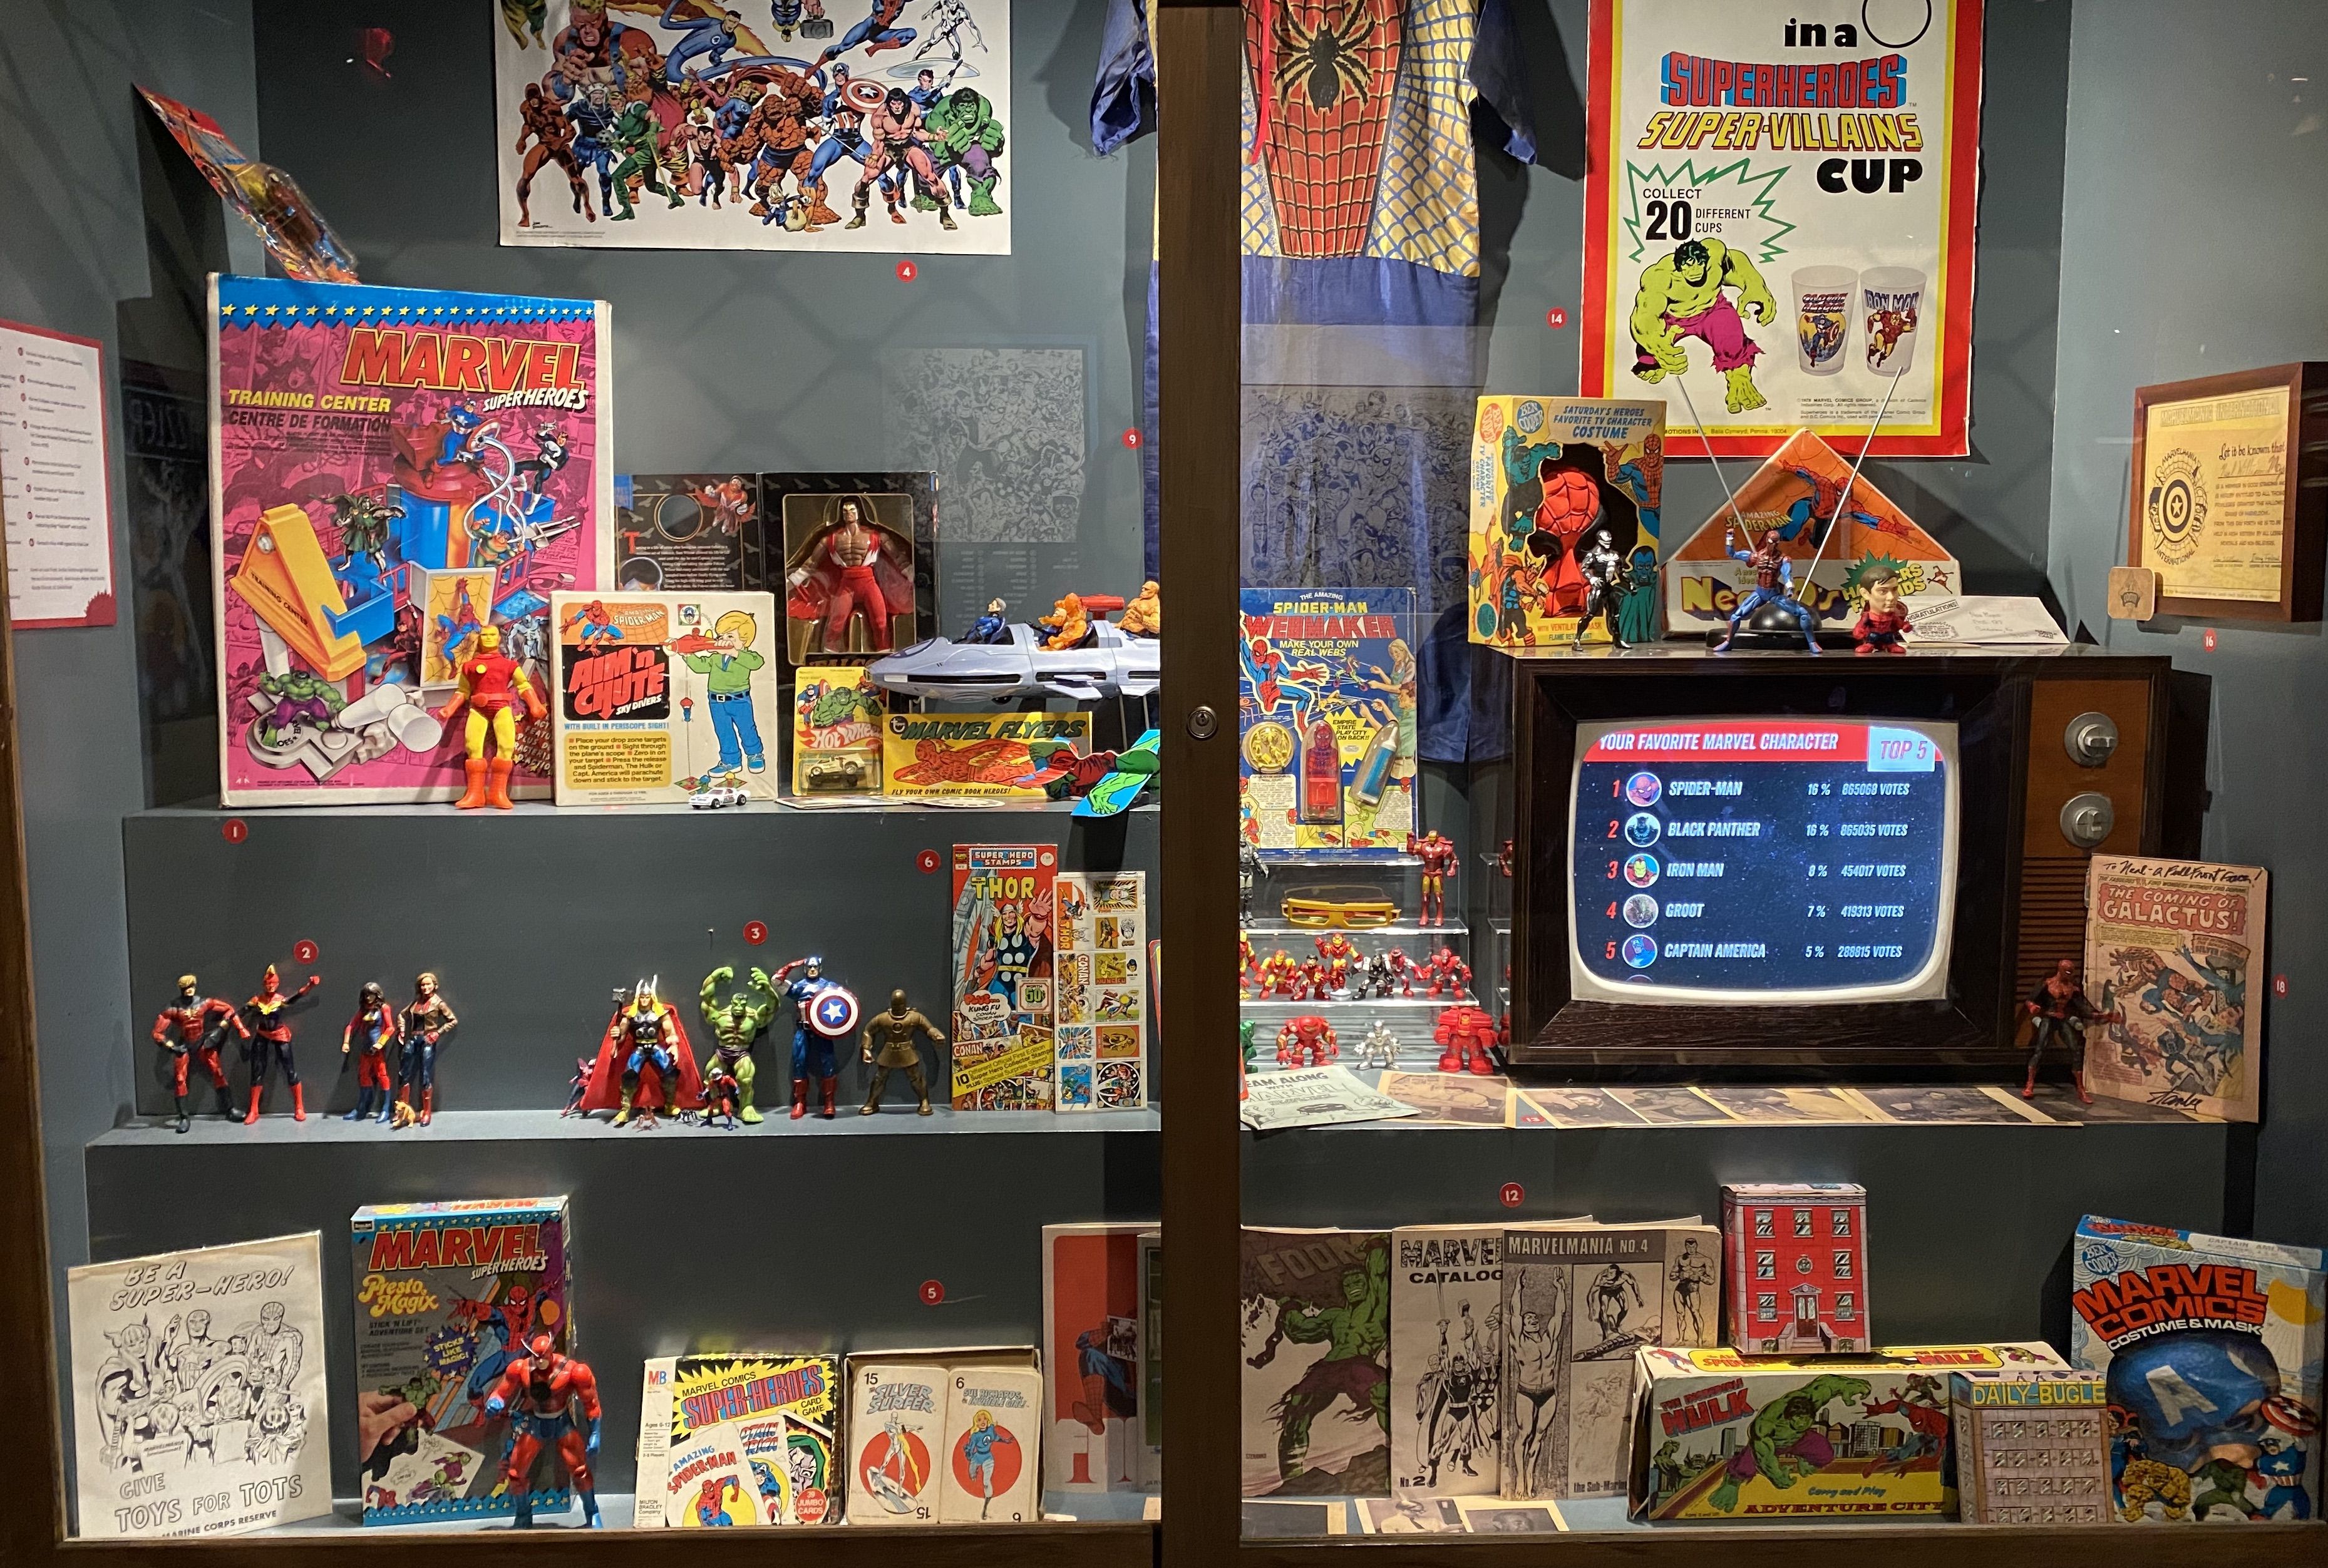 A display of vintage superhero toys behind a window